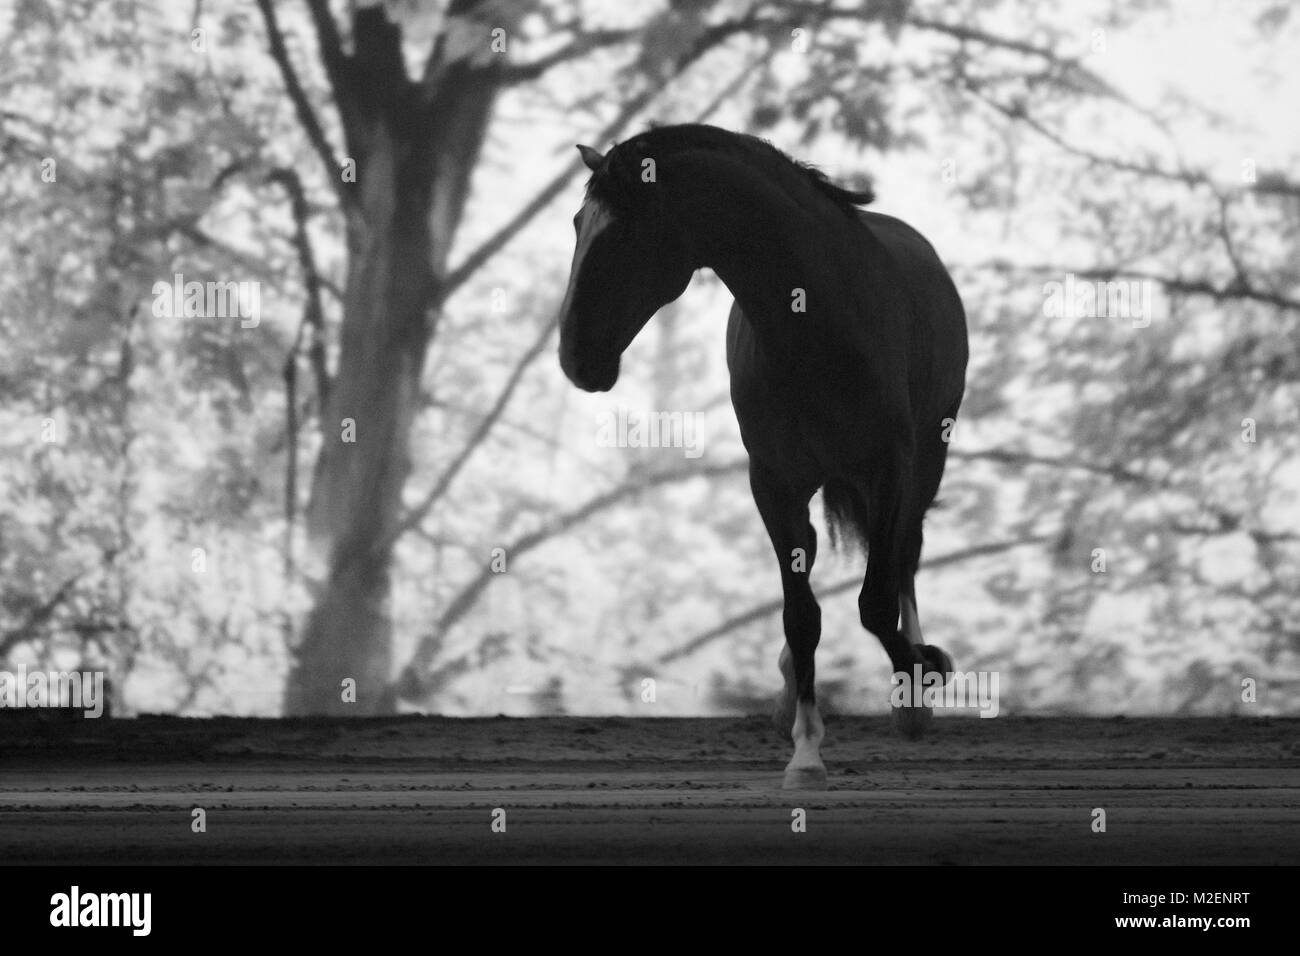 Apassionata, eine Pferdeshow, die künstlerische Vorführung verschiedener Pferderassen und Reitweisen mit Lichtkompositionen und Live-Darbietungen von Musikern und Tänzern verbindet, gastierte am 11.01.2013 in der o2 World Hamburg Stock Photo